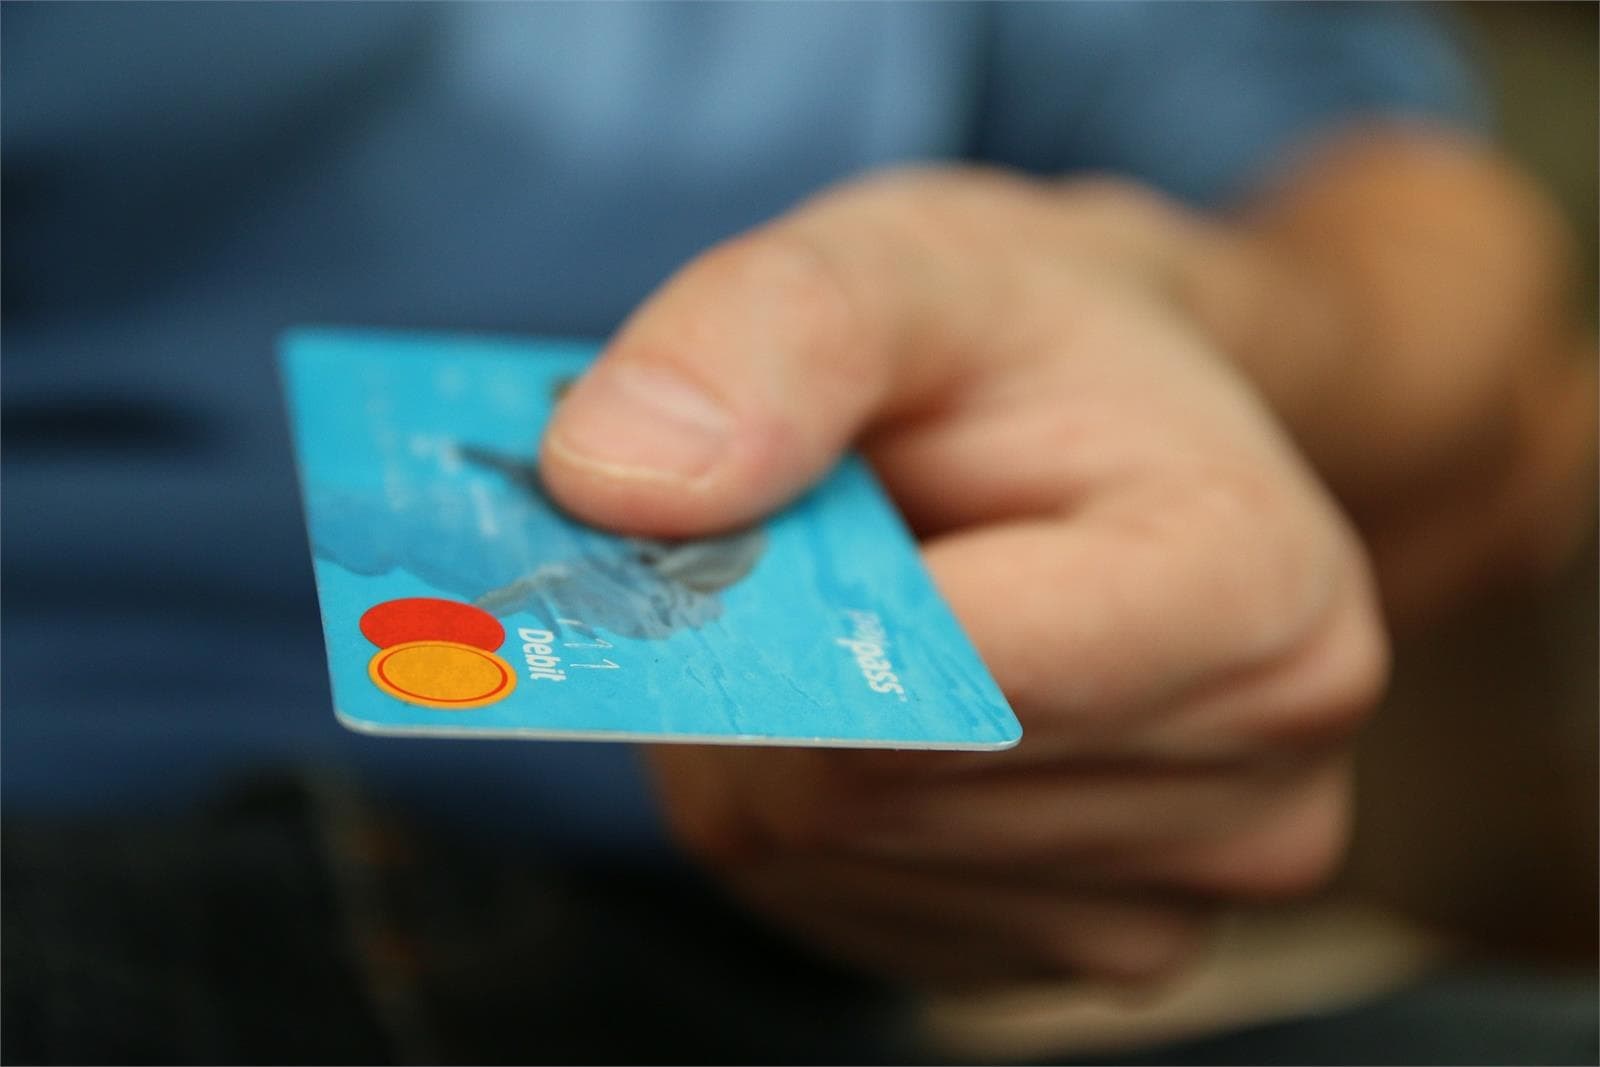 Las tarjetas revolving: nueva oleada de reclamaciones contra la banca por "usura" - Imagen 1